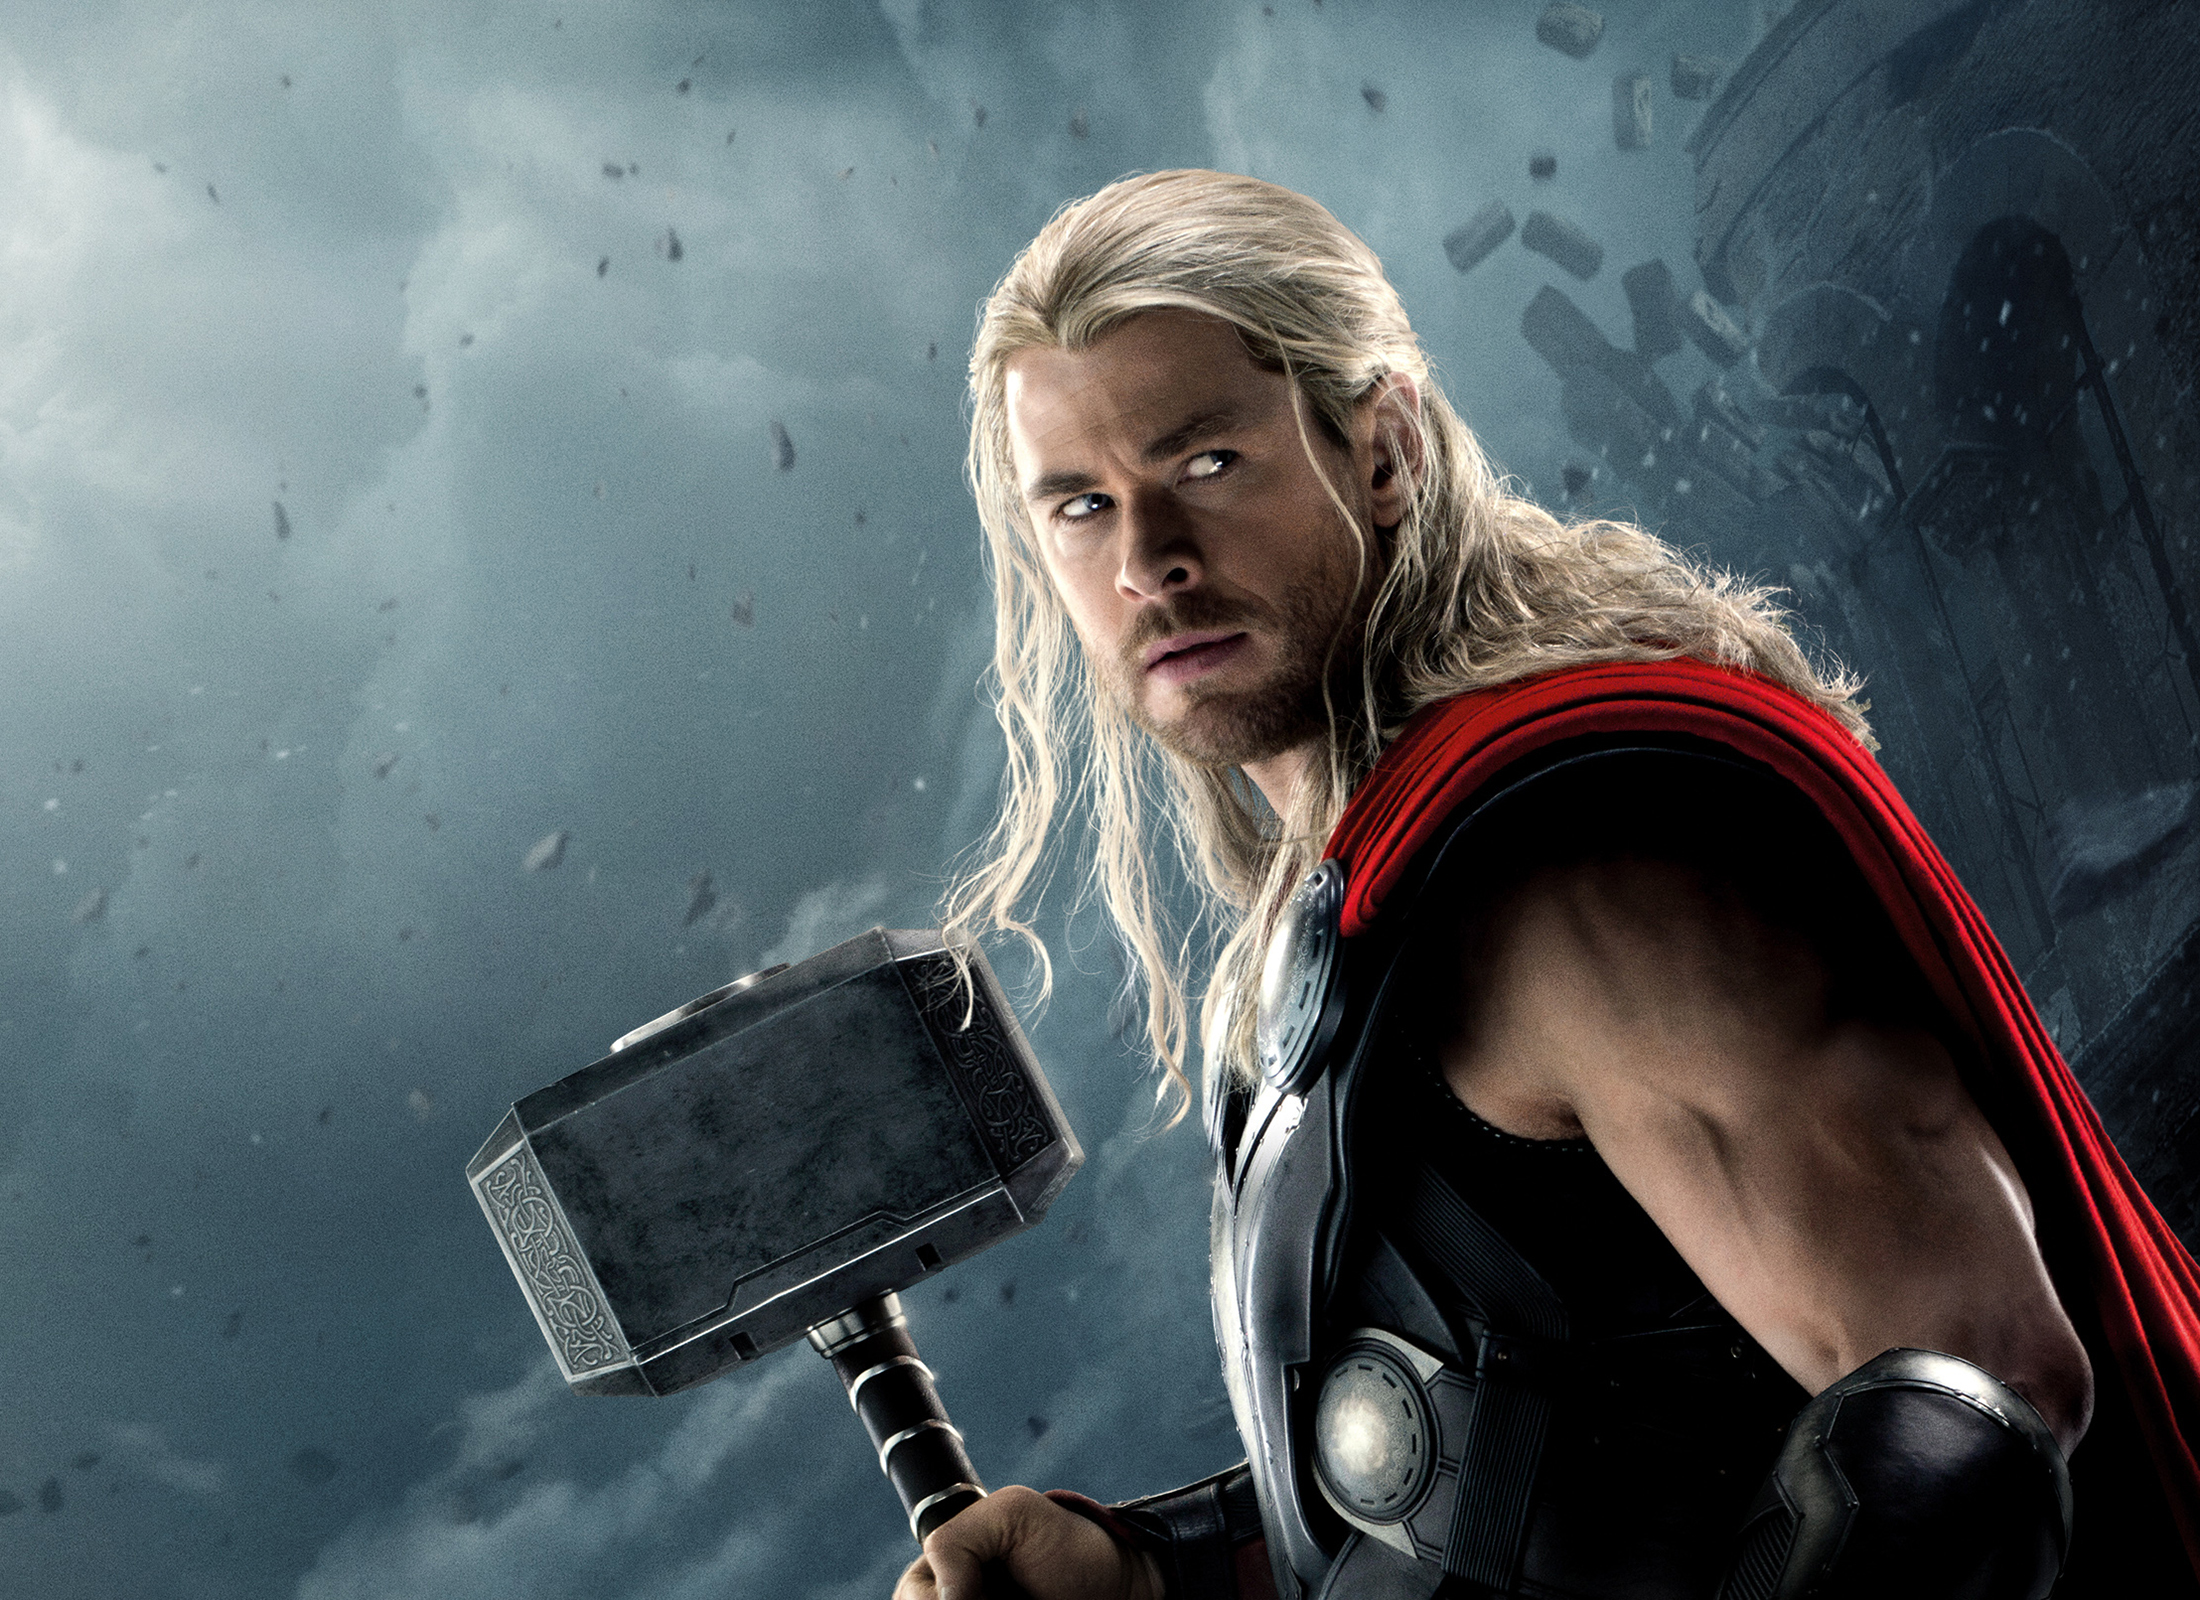 Thor Thor 2 The Dark World Thor Ragnarok Avengers Endgame Avengers Infinity War Avengers Age Of Ultr 2200x1600